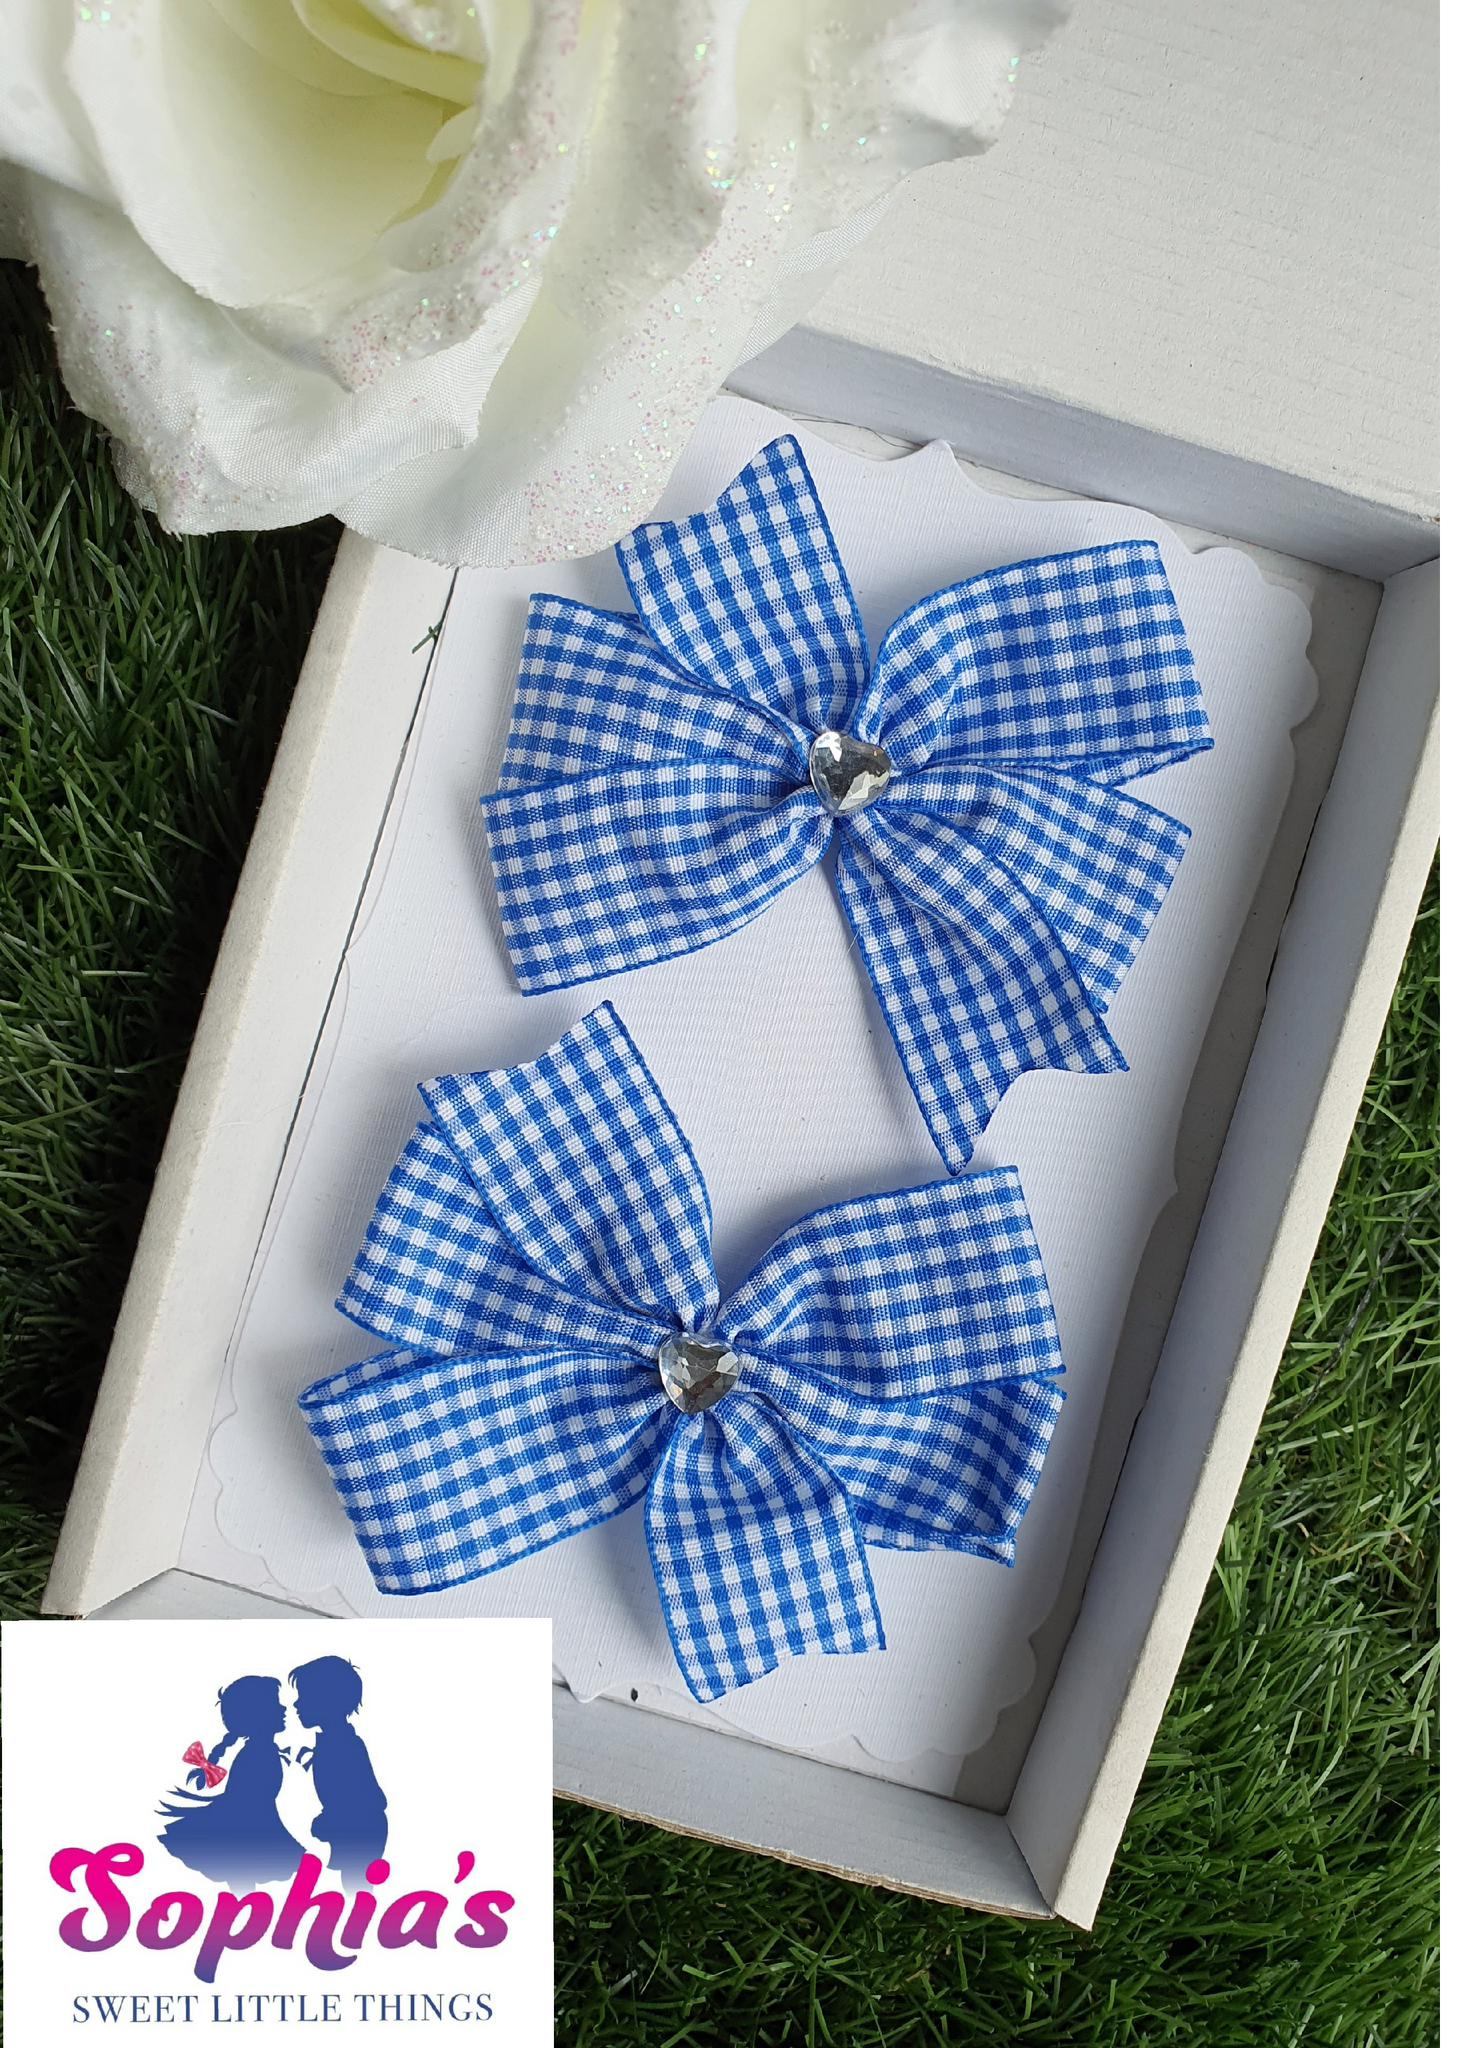 Royal Blue Pinwheel Set